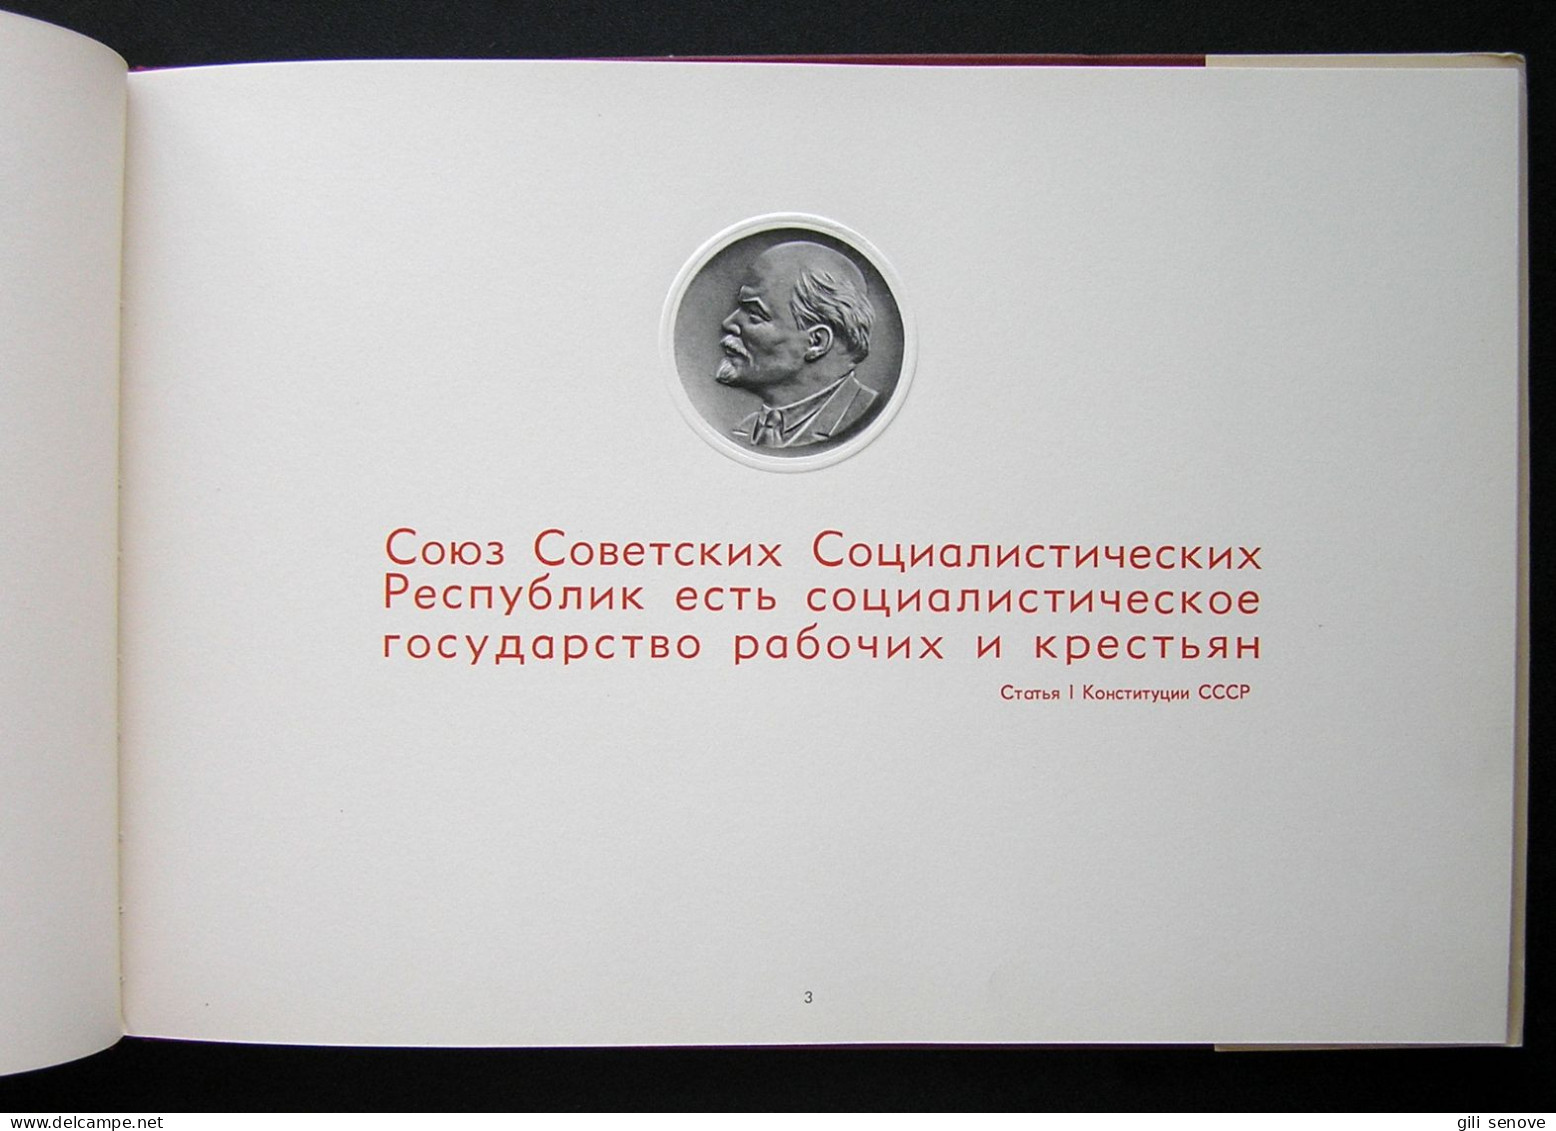 Russian Book / Государственный герб СССР 1959 - Slawische Sprachen